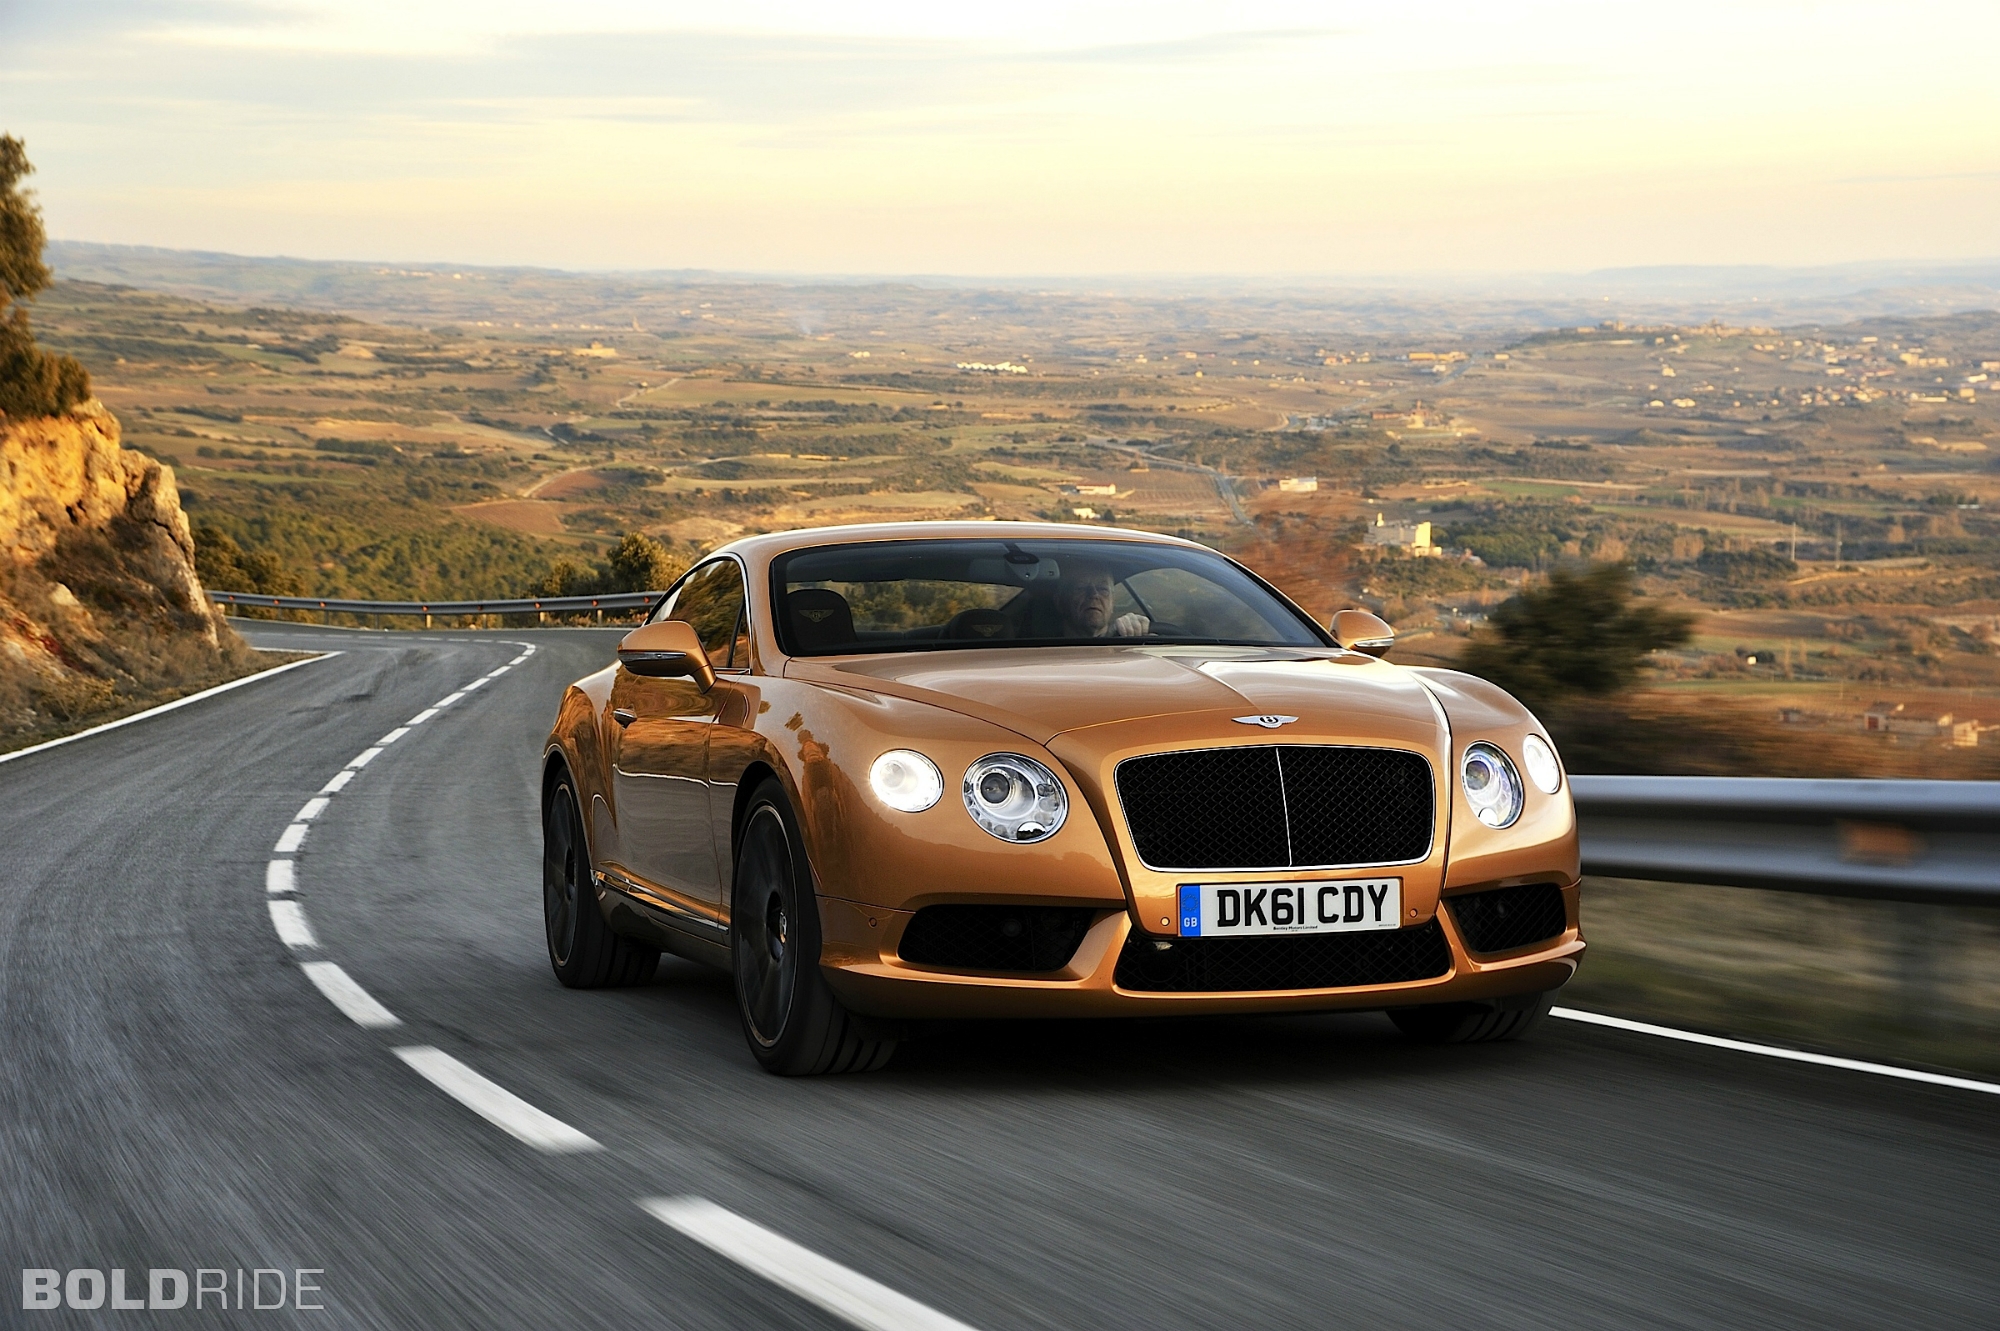 Descarga gratuita de fondo de pantalla para móvil de Bentley Continental Gt Velocidad, Bentley, Vehículos.